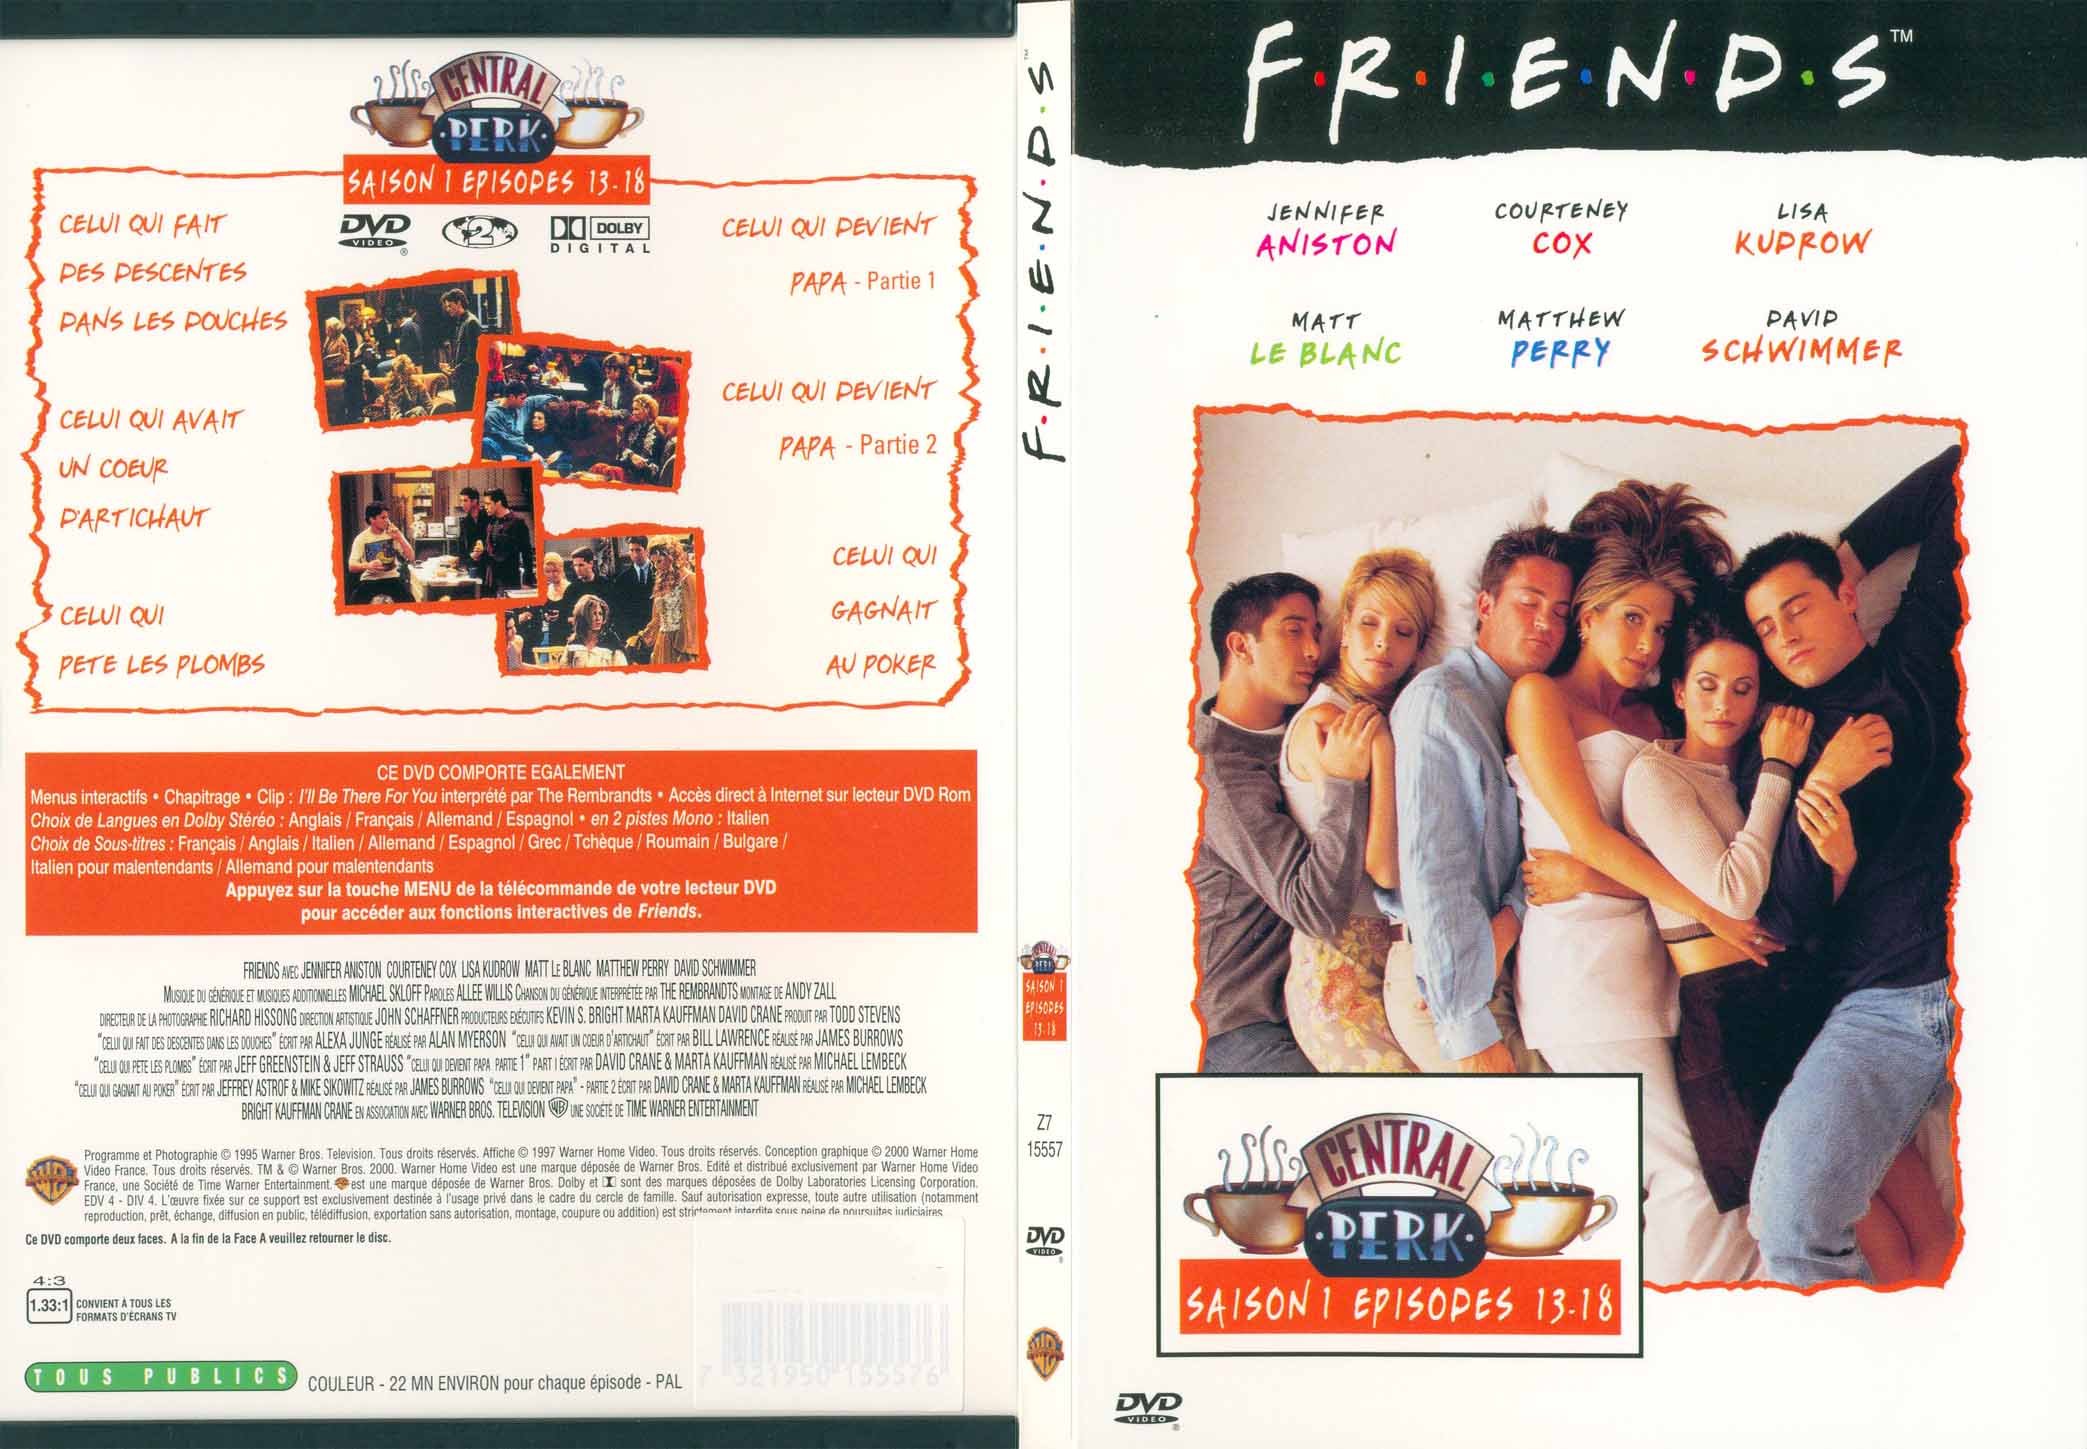 Jaquette DVD Friends saison 1 dvd 3 - SLIM